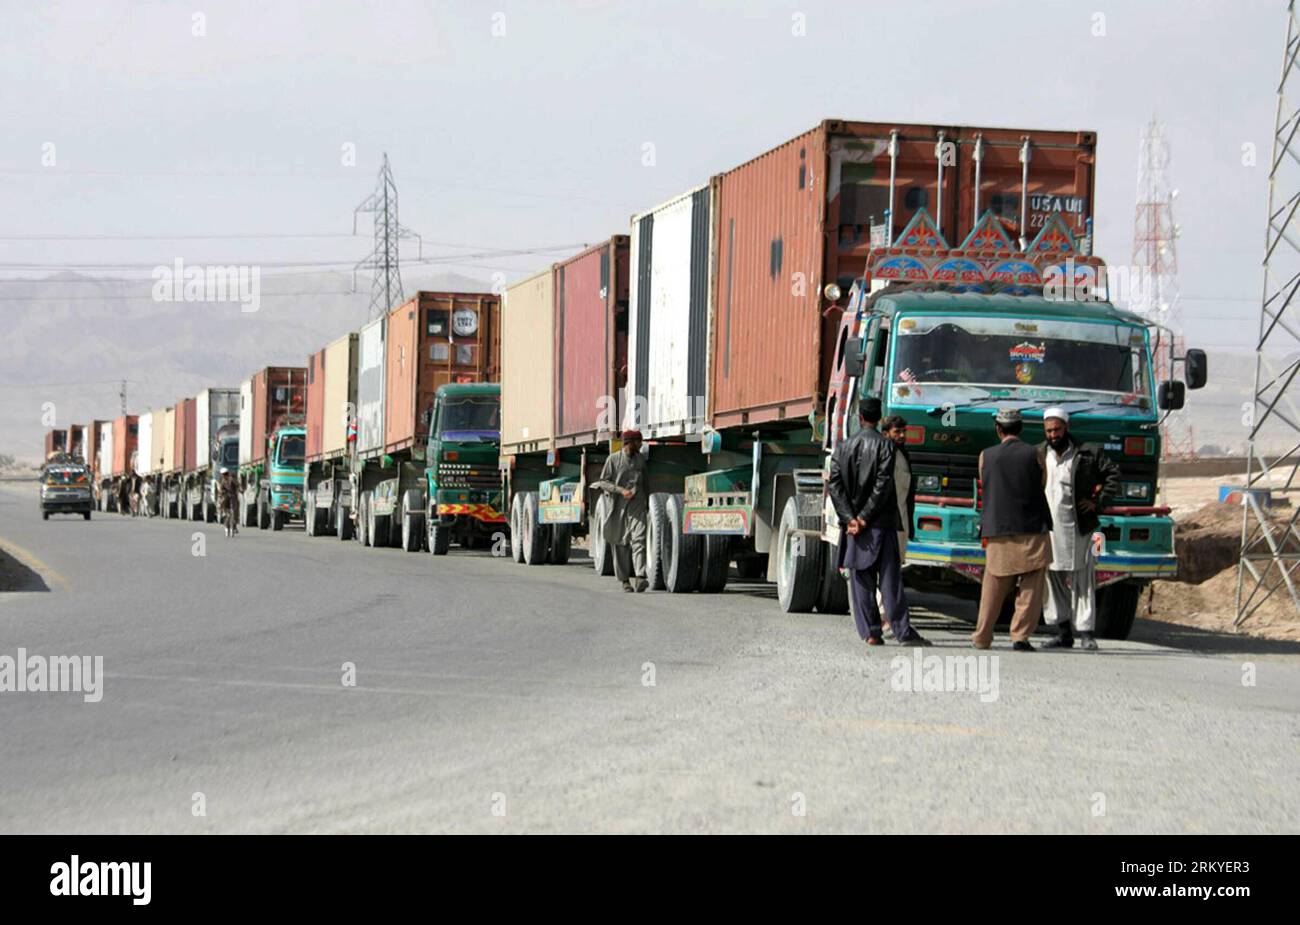 Bildnummer : 59211295 Datum : 12.02.2013 Copyright : imago/Xinhua QUETTA, 12 février 2013 - des camions d'approvisionnement de l'OTAN transportant des équipements de l'OTAN se trouvent à un poste de contrôle à Quetta, au sud-ouest du Pakistan, le 12 février 2013. Les États-Unis disent qu'ils ont commencé à utiliser la route terrestre à travers le Pakistan pour retirer l'équipement militaire américain d'Afghanistan. (Xinhua photo/Mohammad)(bxy) PAKISTAN-QUETTA-US MILITARY-SEVRAGE PUBLICATIONxNOTxINxCHN Gesellschaft Nato transport Truck Logistik LKW x0x xdd 2013 quer 59211295 Date 12 02 2013 Copyright Imago XINHUA Quetta fév 12 2013 camions d'approvisionnement de l'OTAN transportant le parc d'équipement de l'OTAN A Banque D'Images